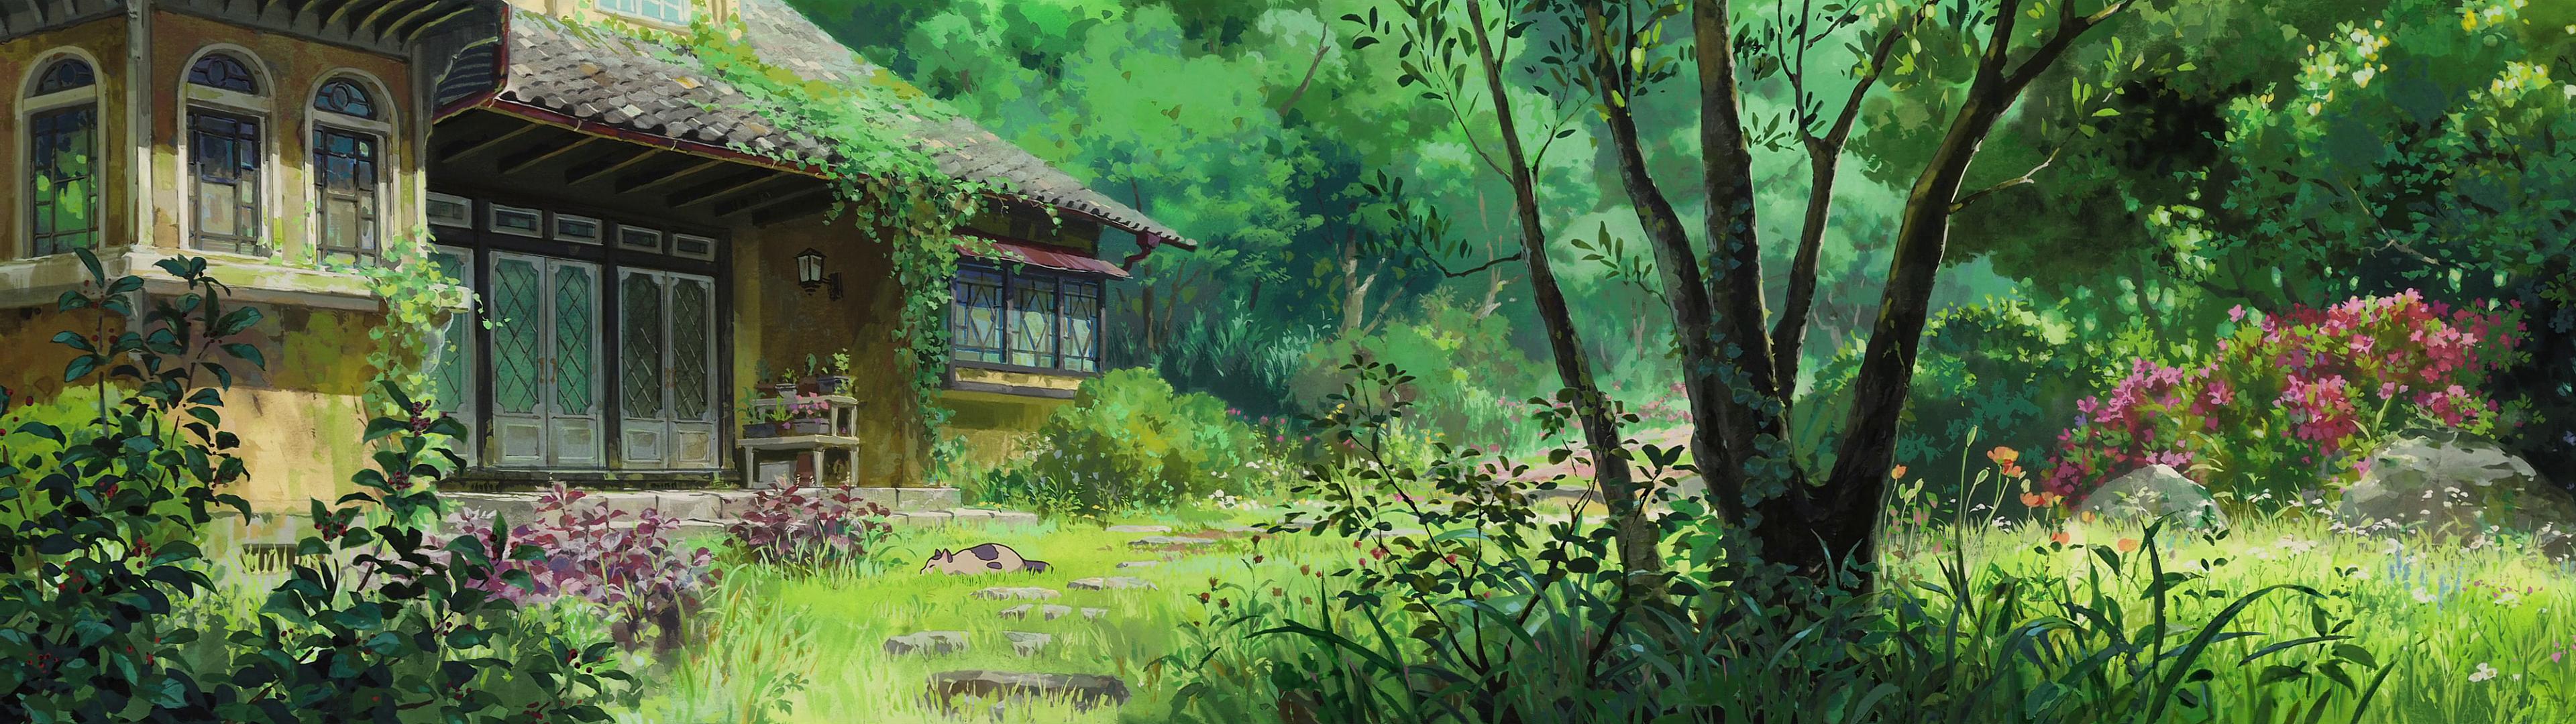 High res dual screen Studio Ghibli desktop wallpapers